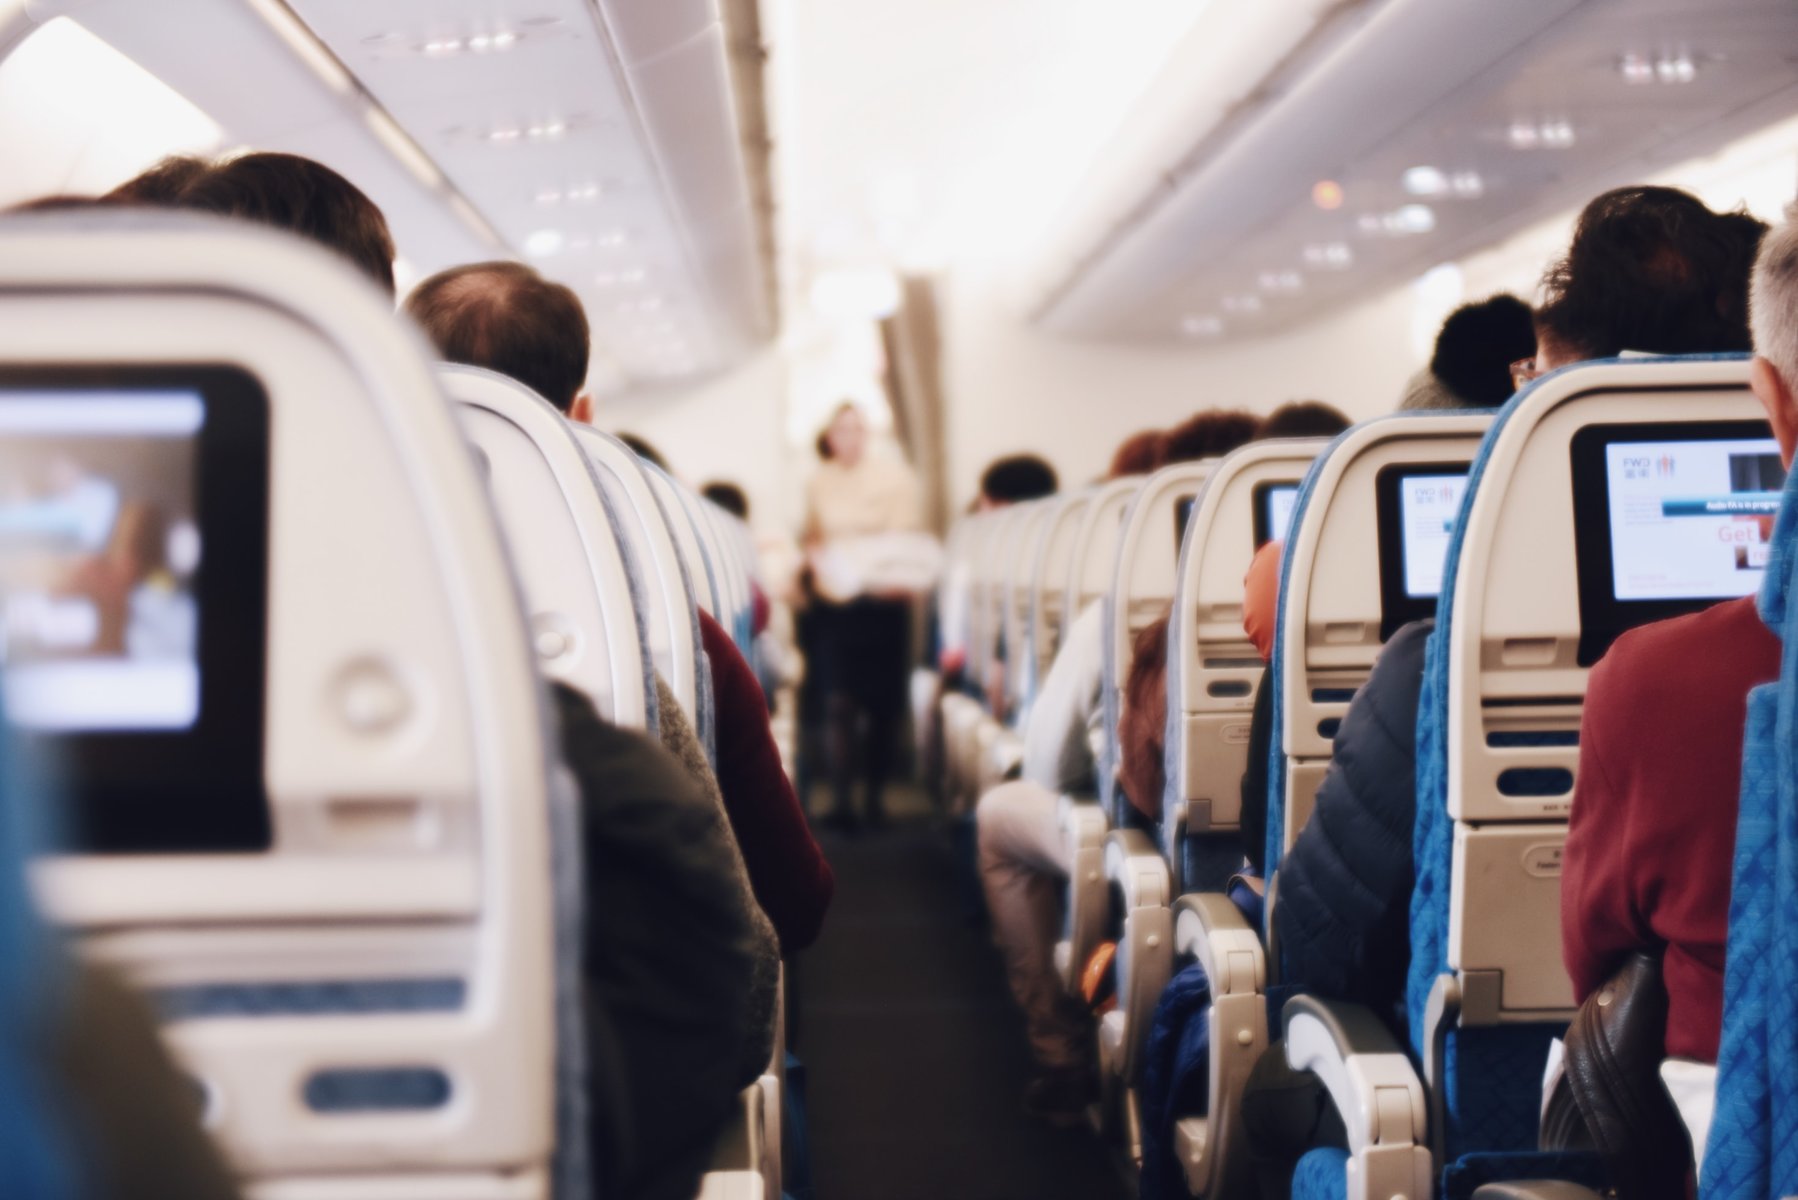 Επιβάτης αεροπλάνου έκανε τσουλήθρα στην έξοδο κινδύνου του αεροπλάνου